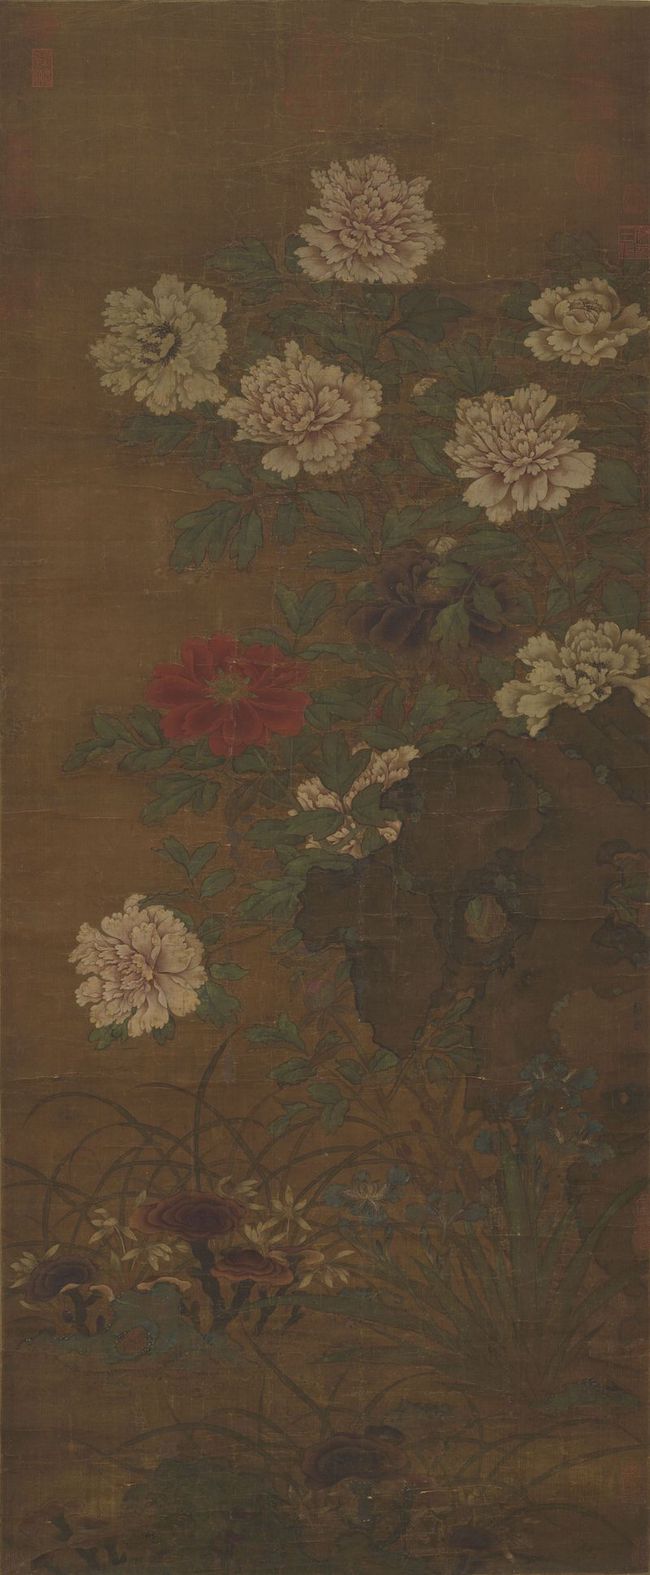 Loài hoa nghìn năm trong tranh cổ lưu tại Cố cung: Mẫu đơn quốc sắc thiên hương, hoa nở chấn động kinh thành - Ảnh 2.